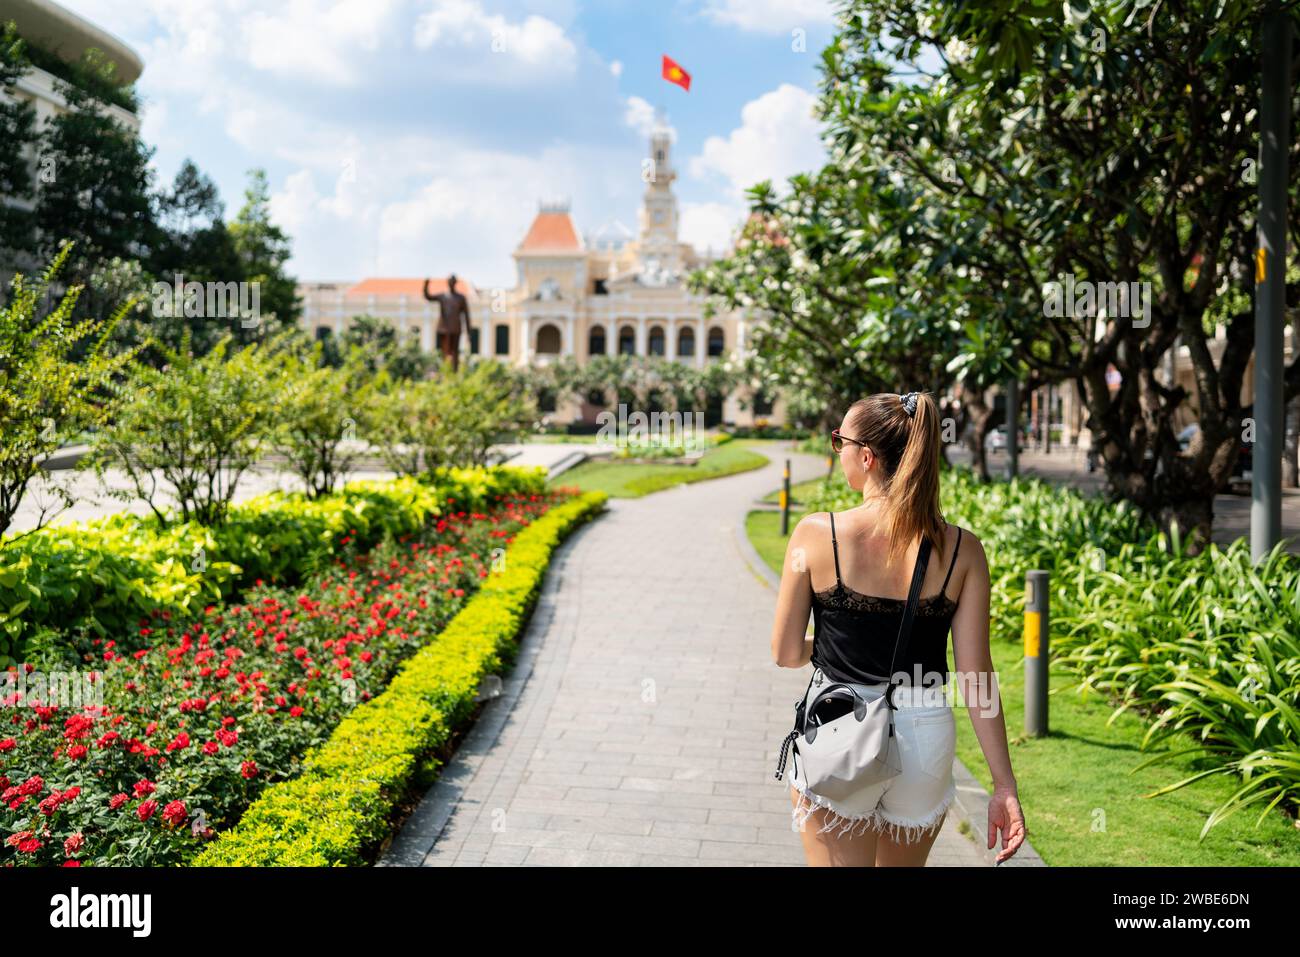 Touriste à Saigon. Tourisme et voyages à Ho Chi Minh-ville, Vietnam. Femme et statue. Fille marchant dans la place de jardin de parc urbain dans HCMC. Banque D'Images